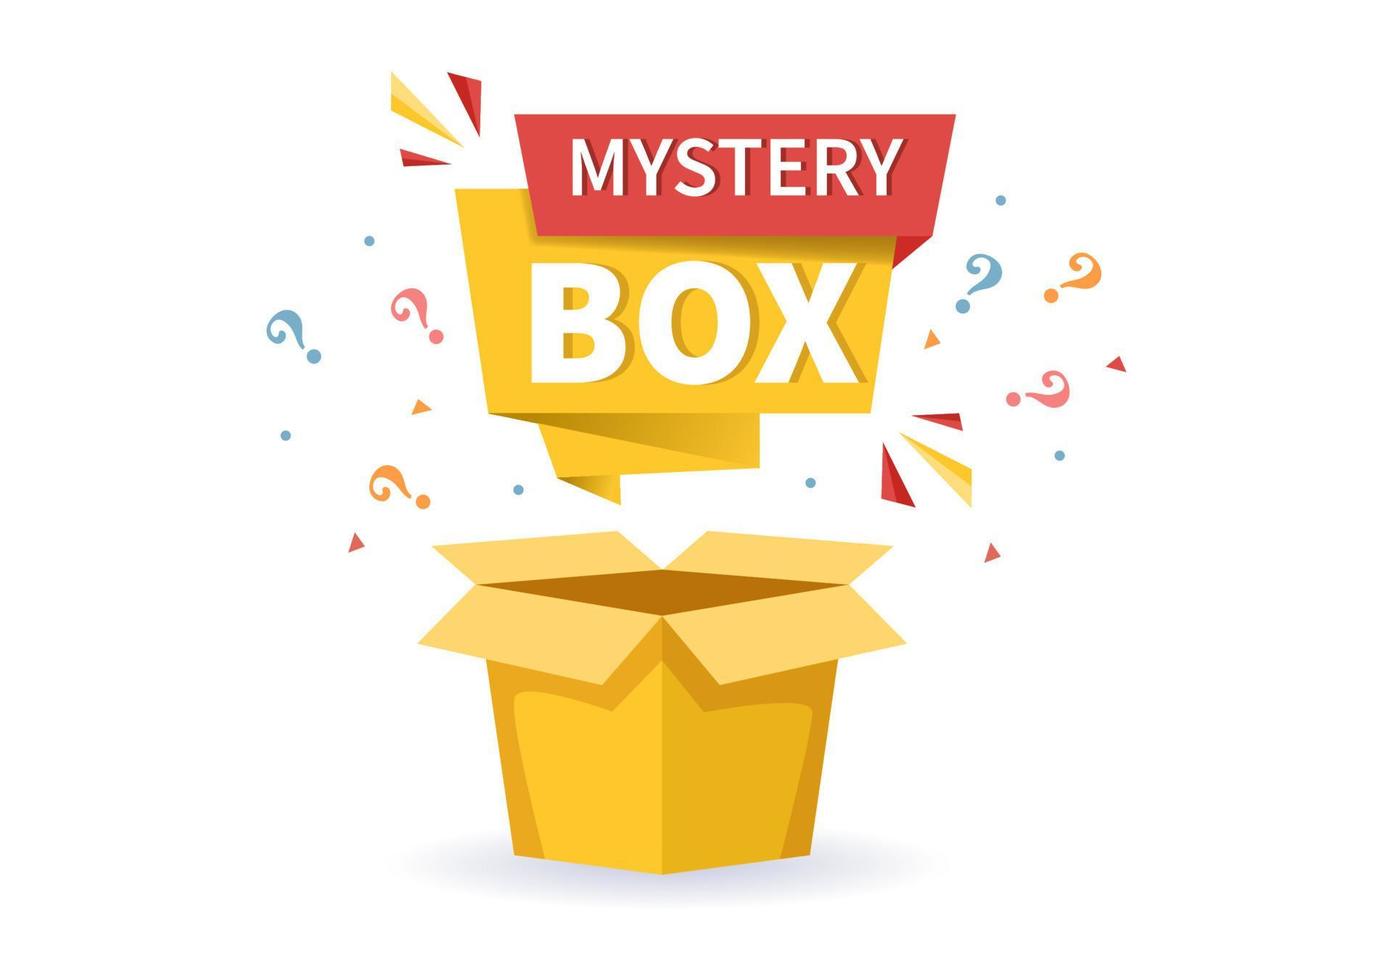 mysterie geschenkdoos met kartonnen doos open van binnen met een vraagteken, geluksgeschenk of andere verrassing in platte cartoon-stijl illustratie vector